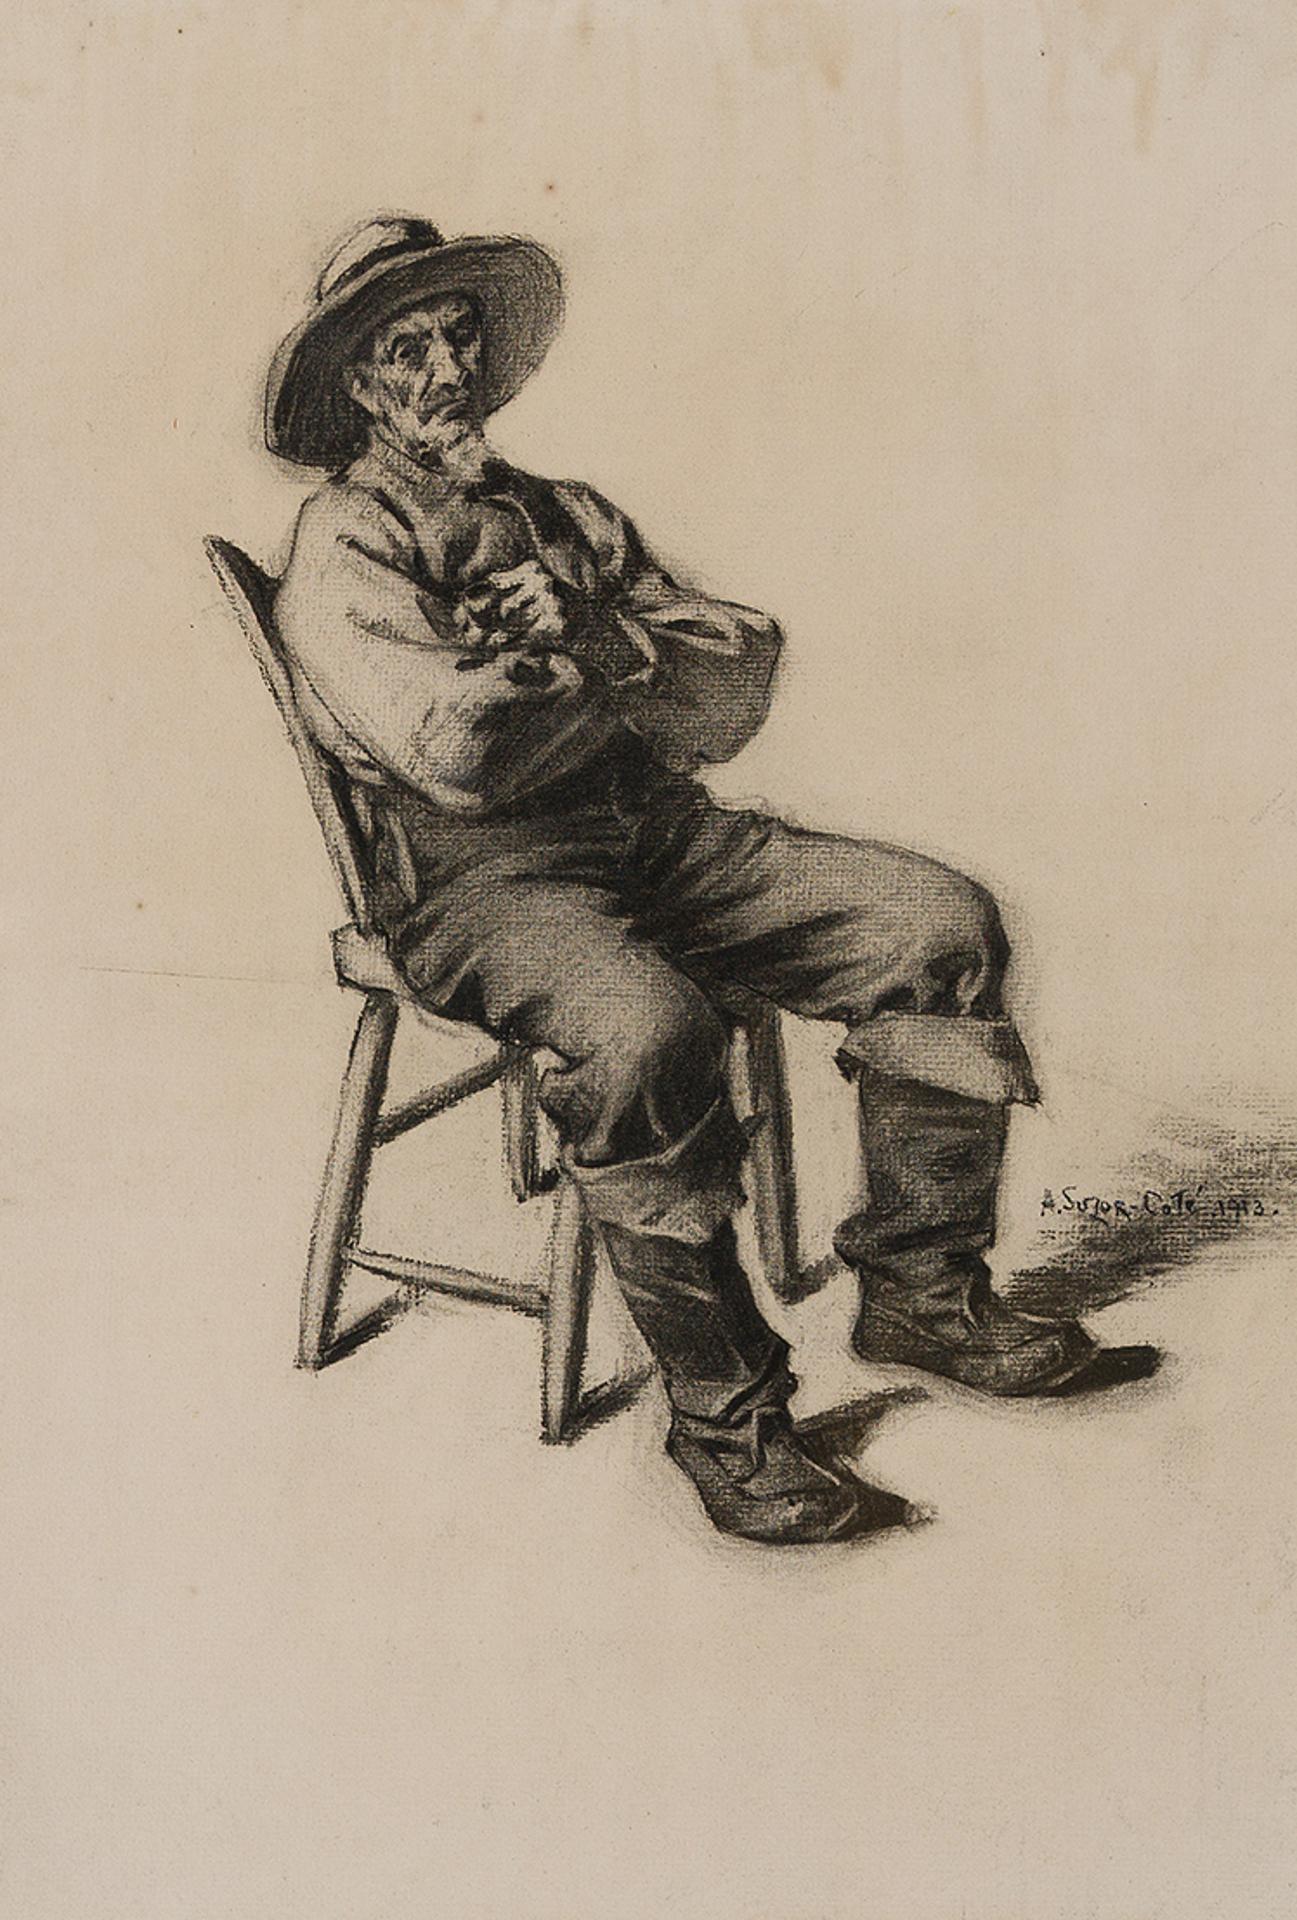 Marc-Aurèle de Foy Suzor-Coté (1869-1937) - Portrait of Joseph Verville